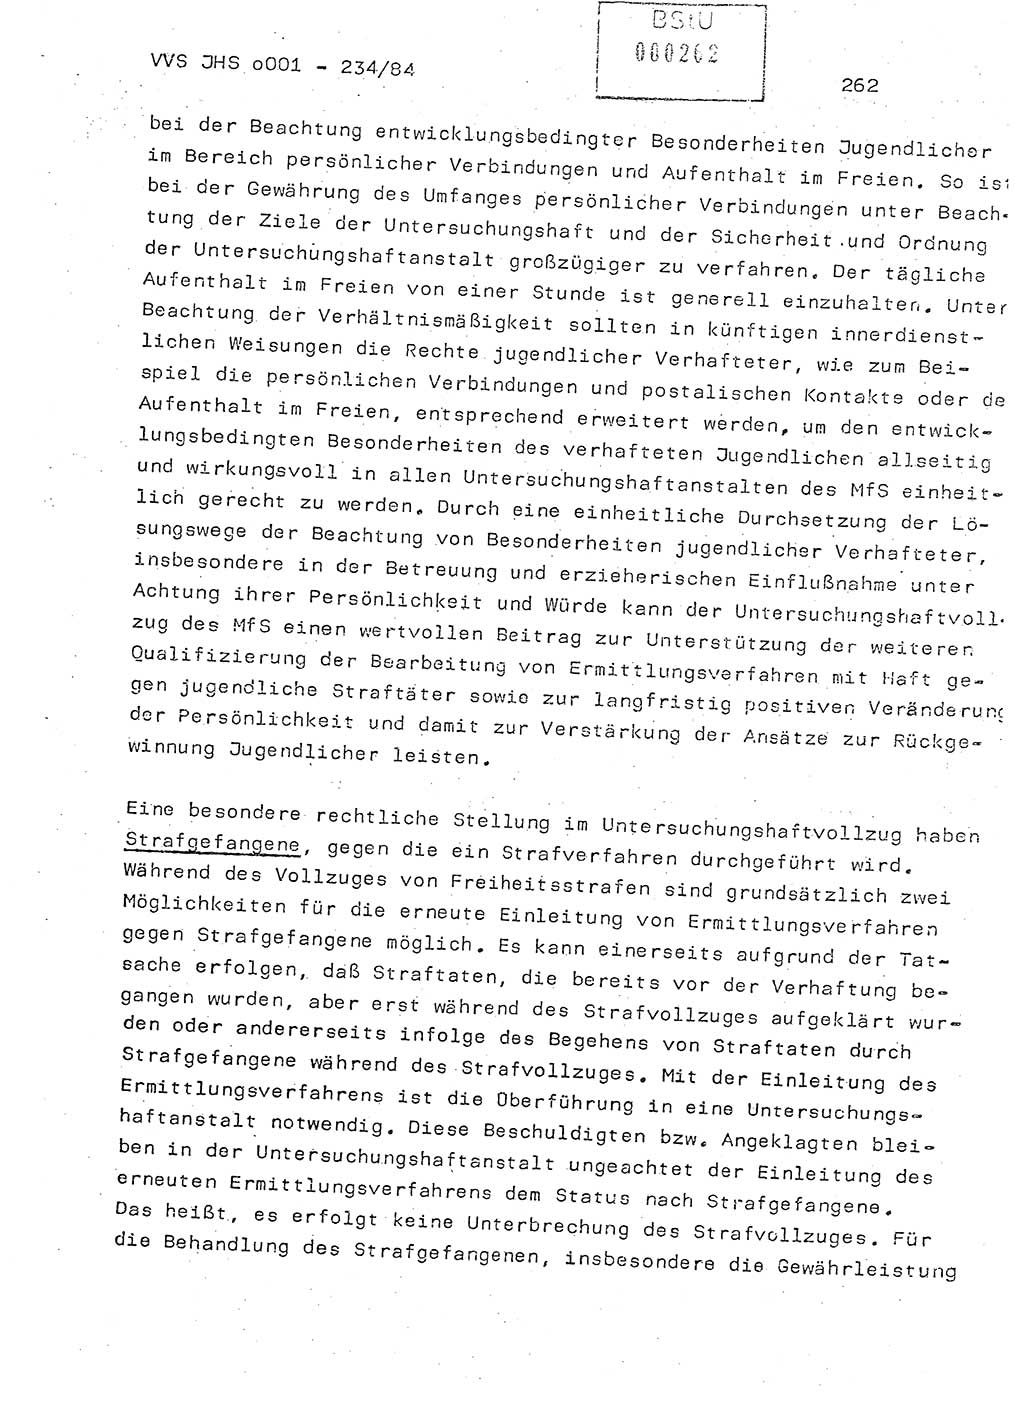 Dissertation Oberst Siegfried Rataizick (Abt. ⅩⅣ), Oberstleutnant Volkmar Heinz (Abt. ⅩⅣ), Oberstleutnant Werner Stein (HA Ⅸ), Hauptmann Heinz Conrad (JHS), Ministerium für Staatssicherheit (MfS) [Deutsche Demokratische Republik (DDR)], Juristische Hochschule (JHS), Vertrauliche Verschlußsache (VVS) o001-234/84, Potsdam 1984, Seite 262 (Diss. MfS DDR JHS VVS o001-234/84 1984, S. 262)